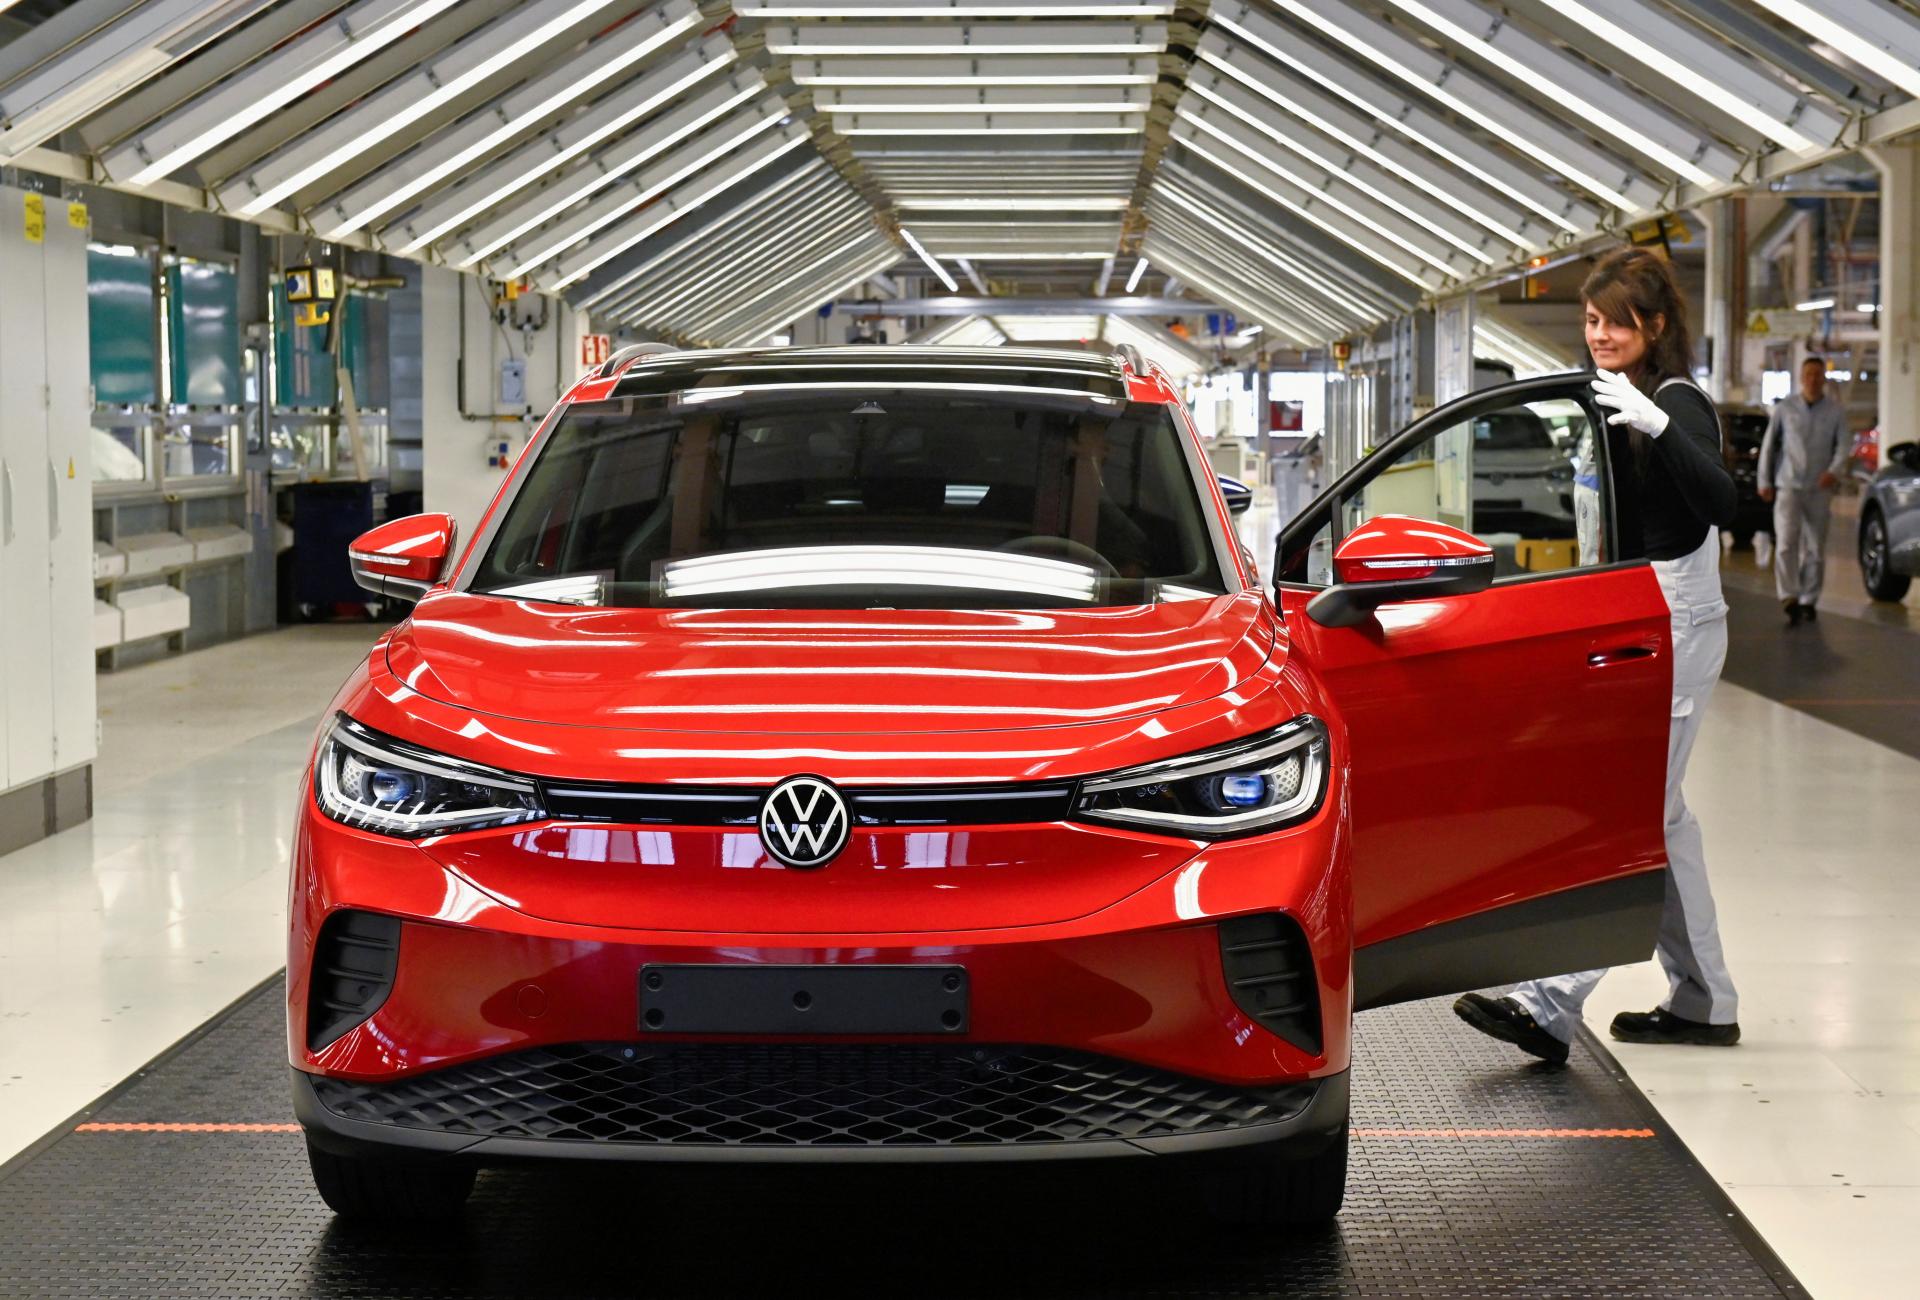 Zistenie HN: Vo Volkswagene využijú inflačnú doložku. Mzdy porastú takmer o 200 eur